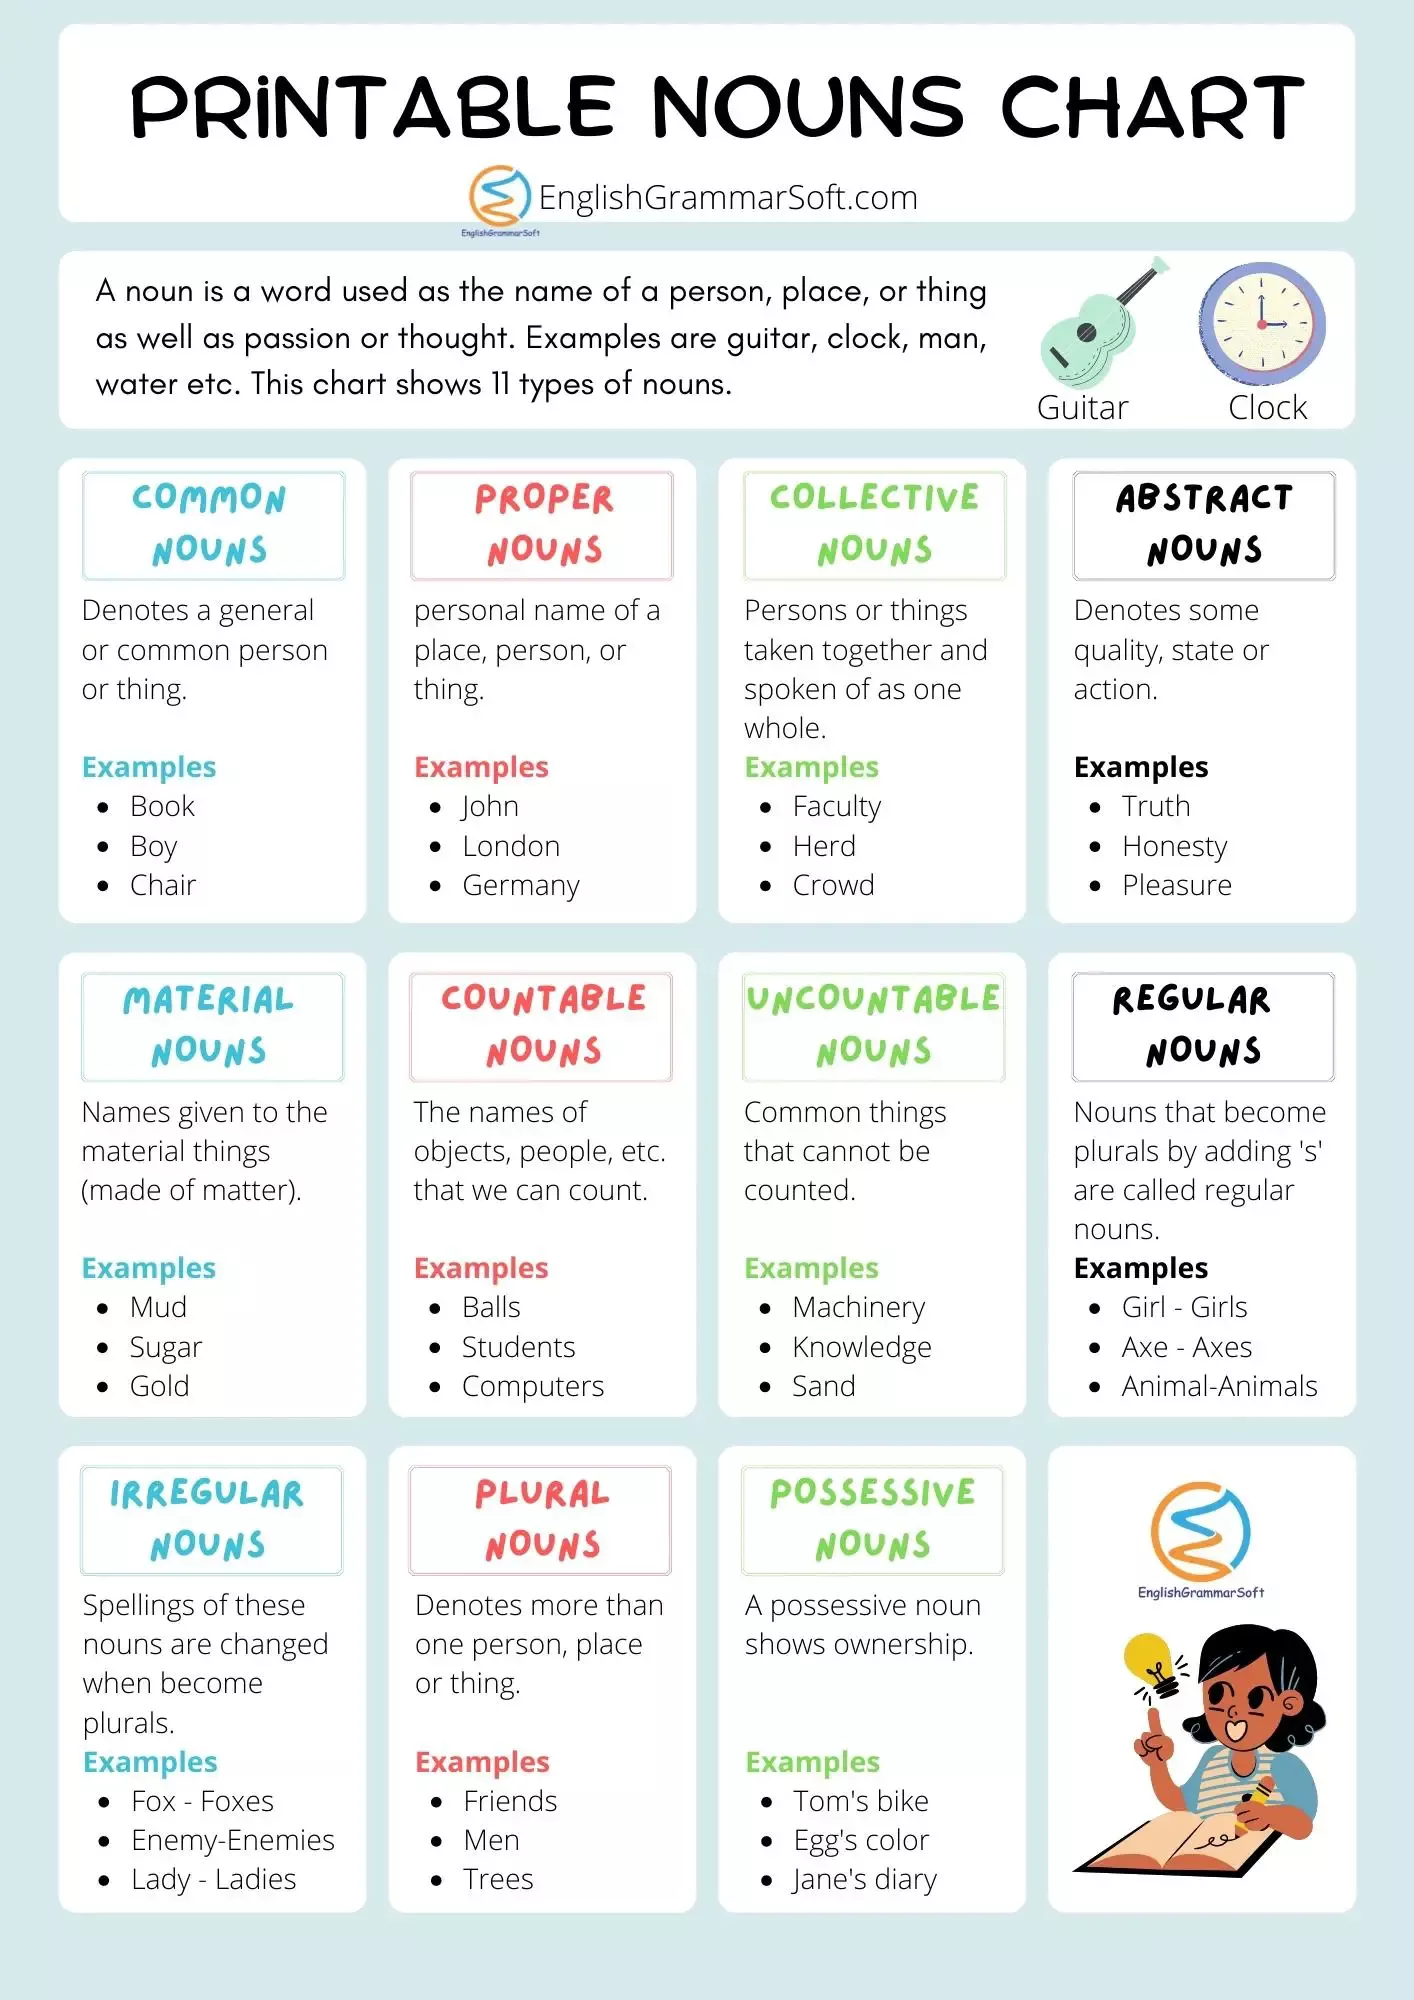 Printable Noun Chart (11 Types of Nouns) - EnglishGrammarSoft